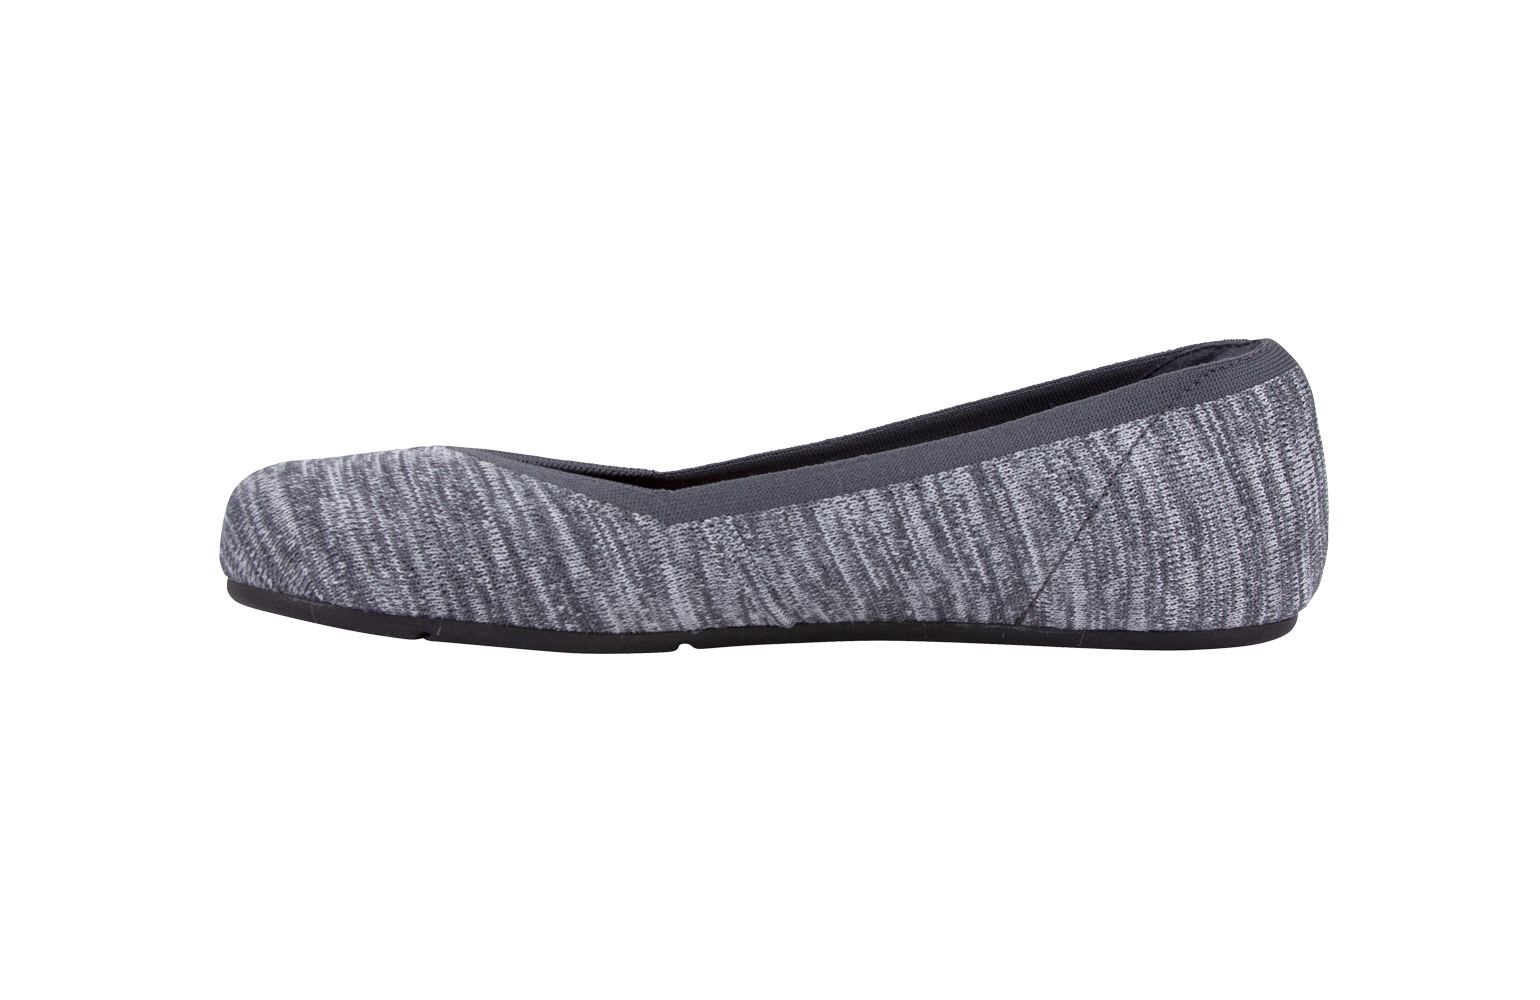 Xero Shoes, Phoenix Knit - PHX-KGRY - gray, dames, maat 38,5 eu